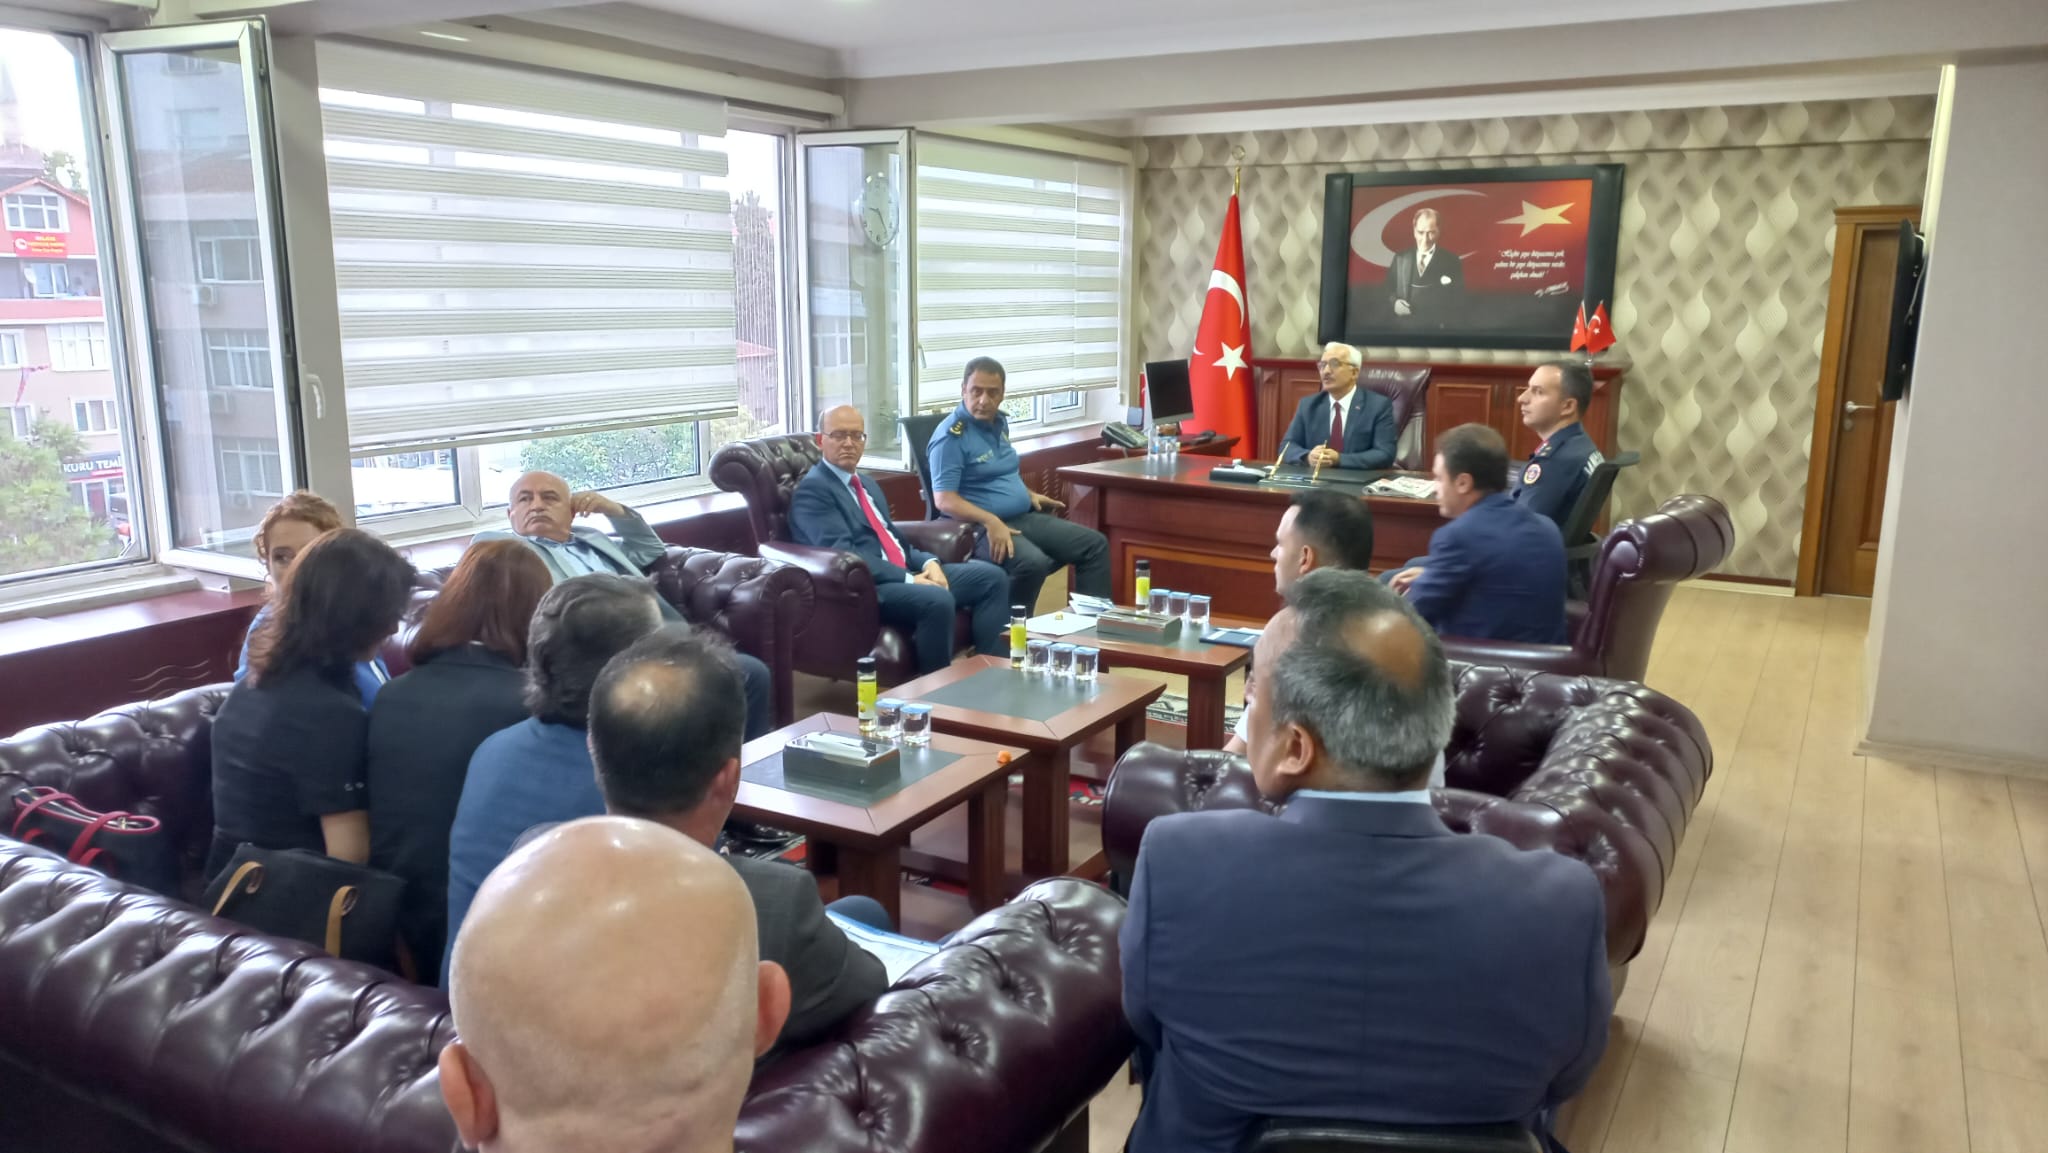 Gebze’nin Yeni Kaymakamı Mehmet Ali Özyiğit Kamu Kurum ve Müdürlerini Kabul Etti